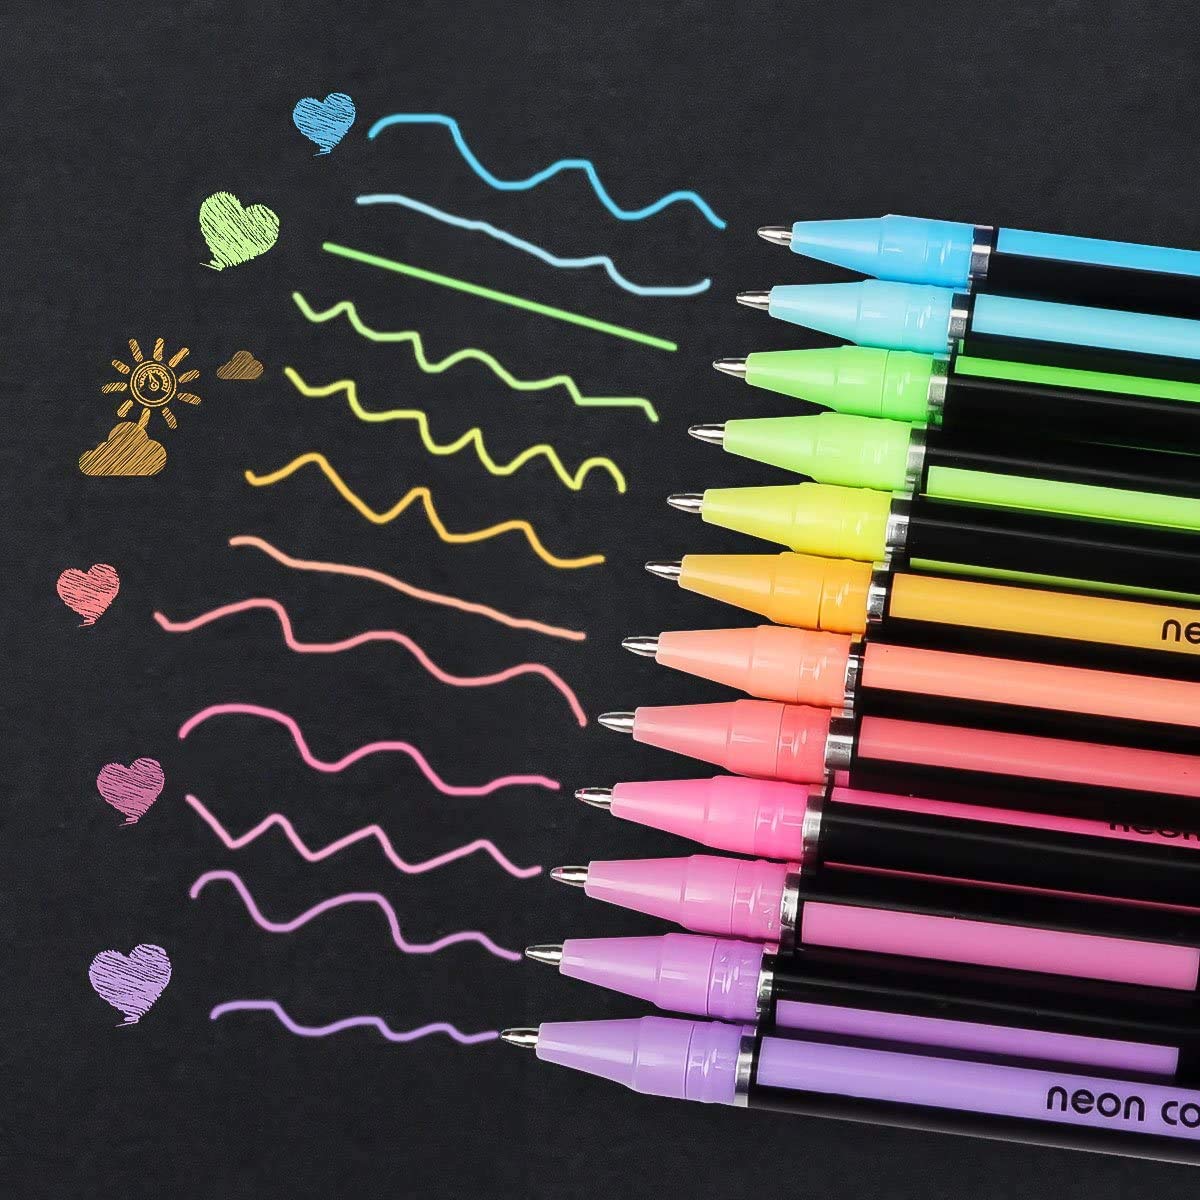 12 Piece Neon Color Gel Pens